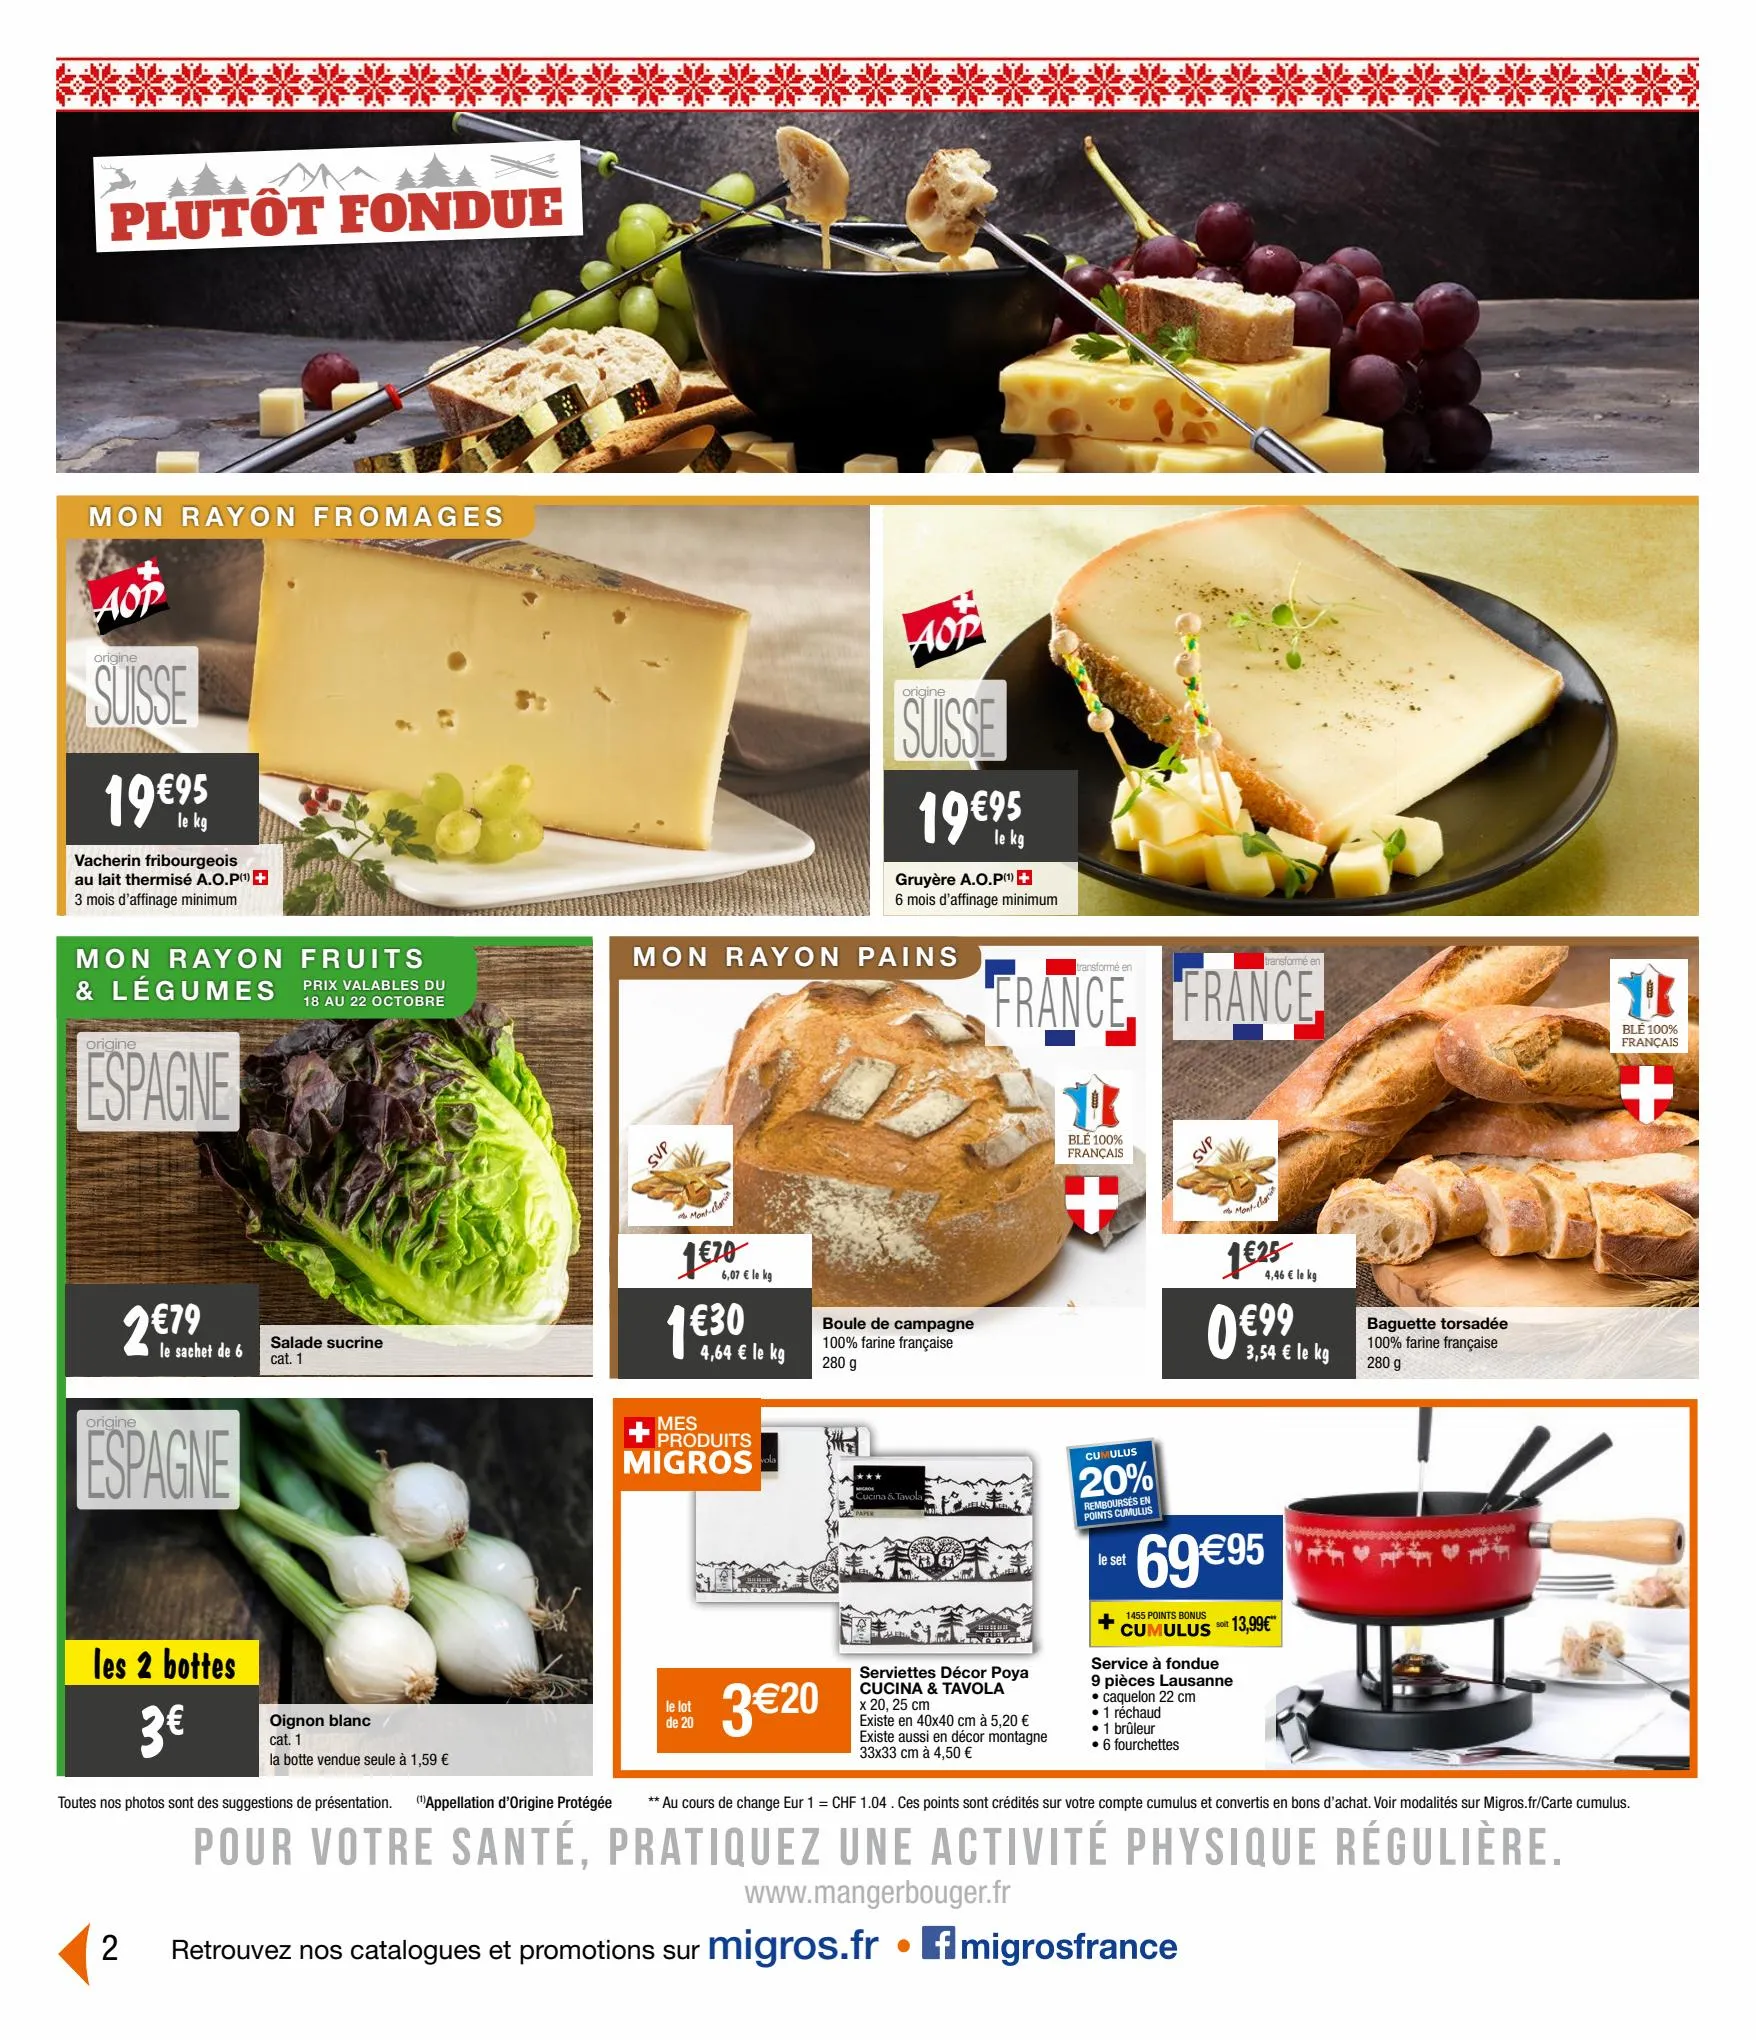 Catalogue Fondue Raclette, page 00002